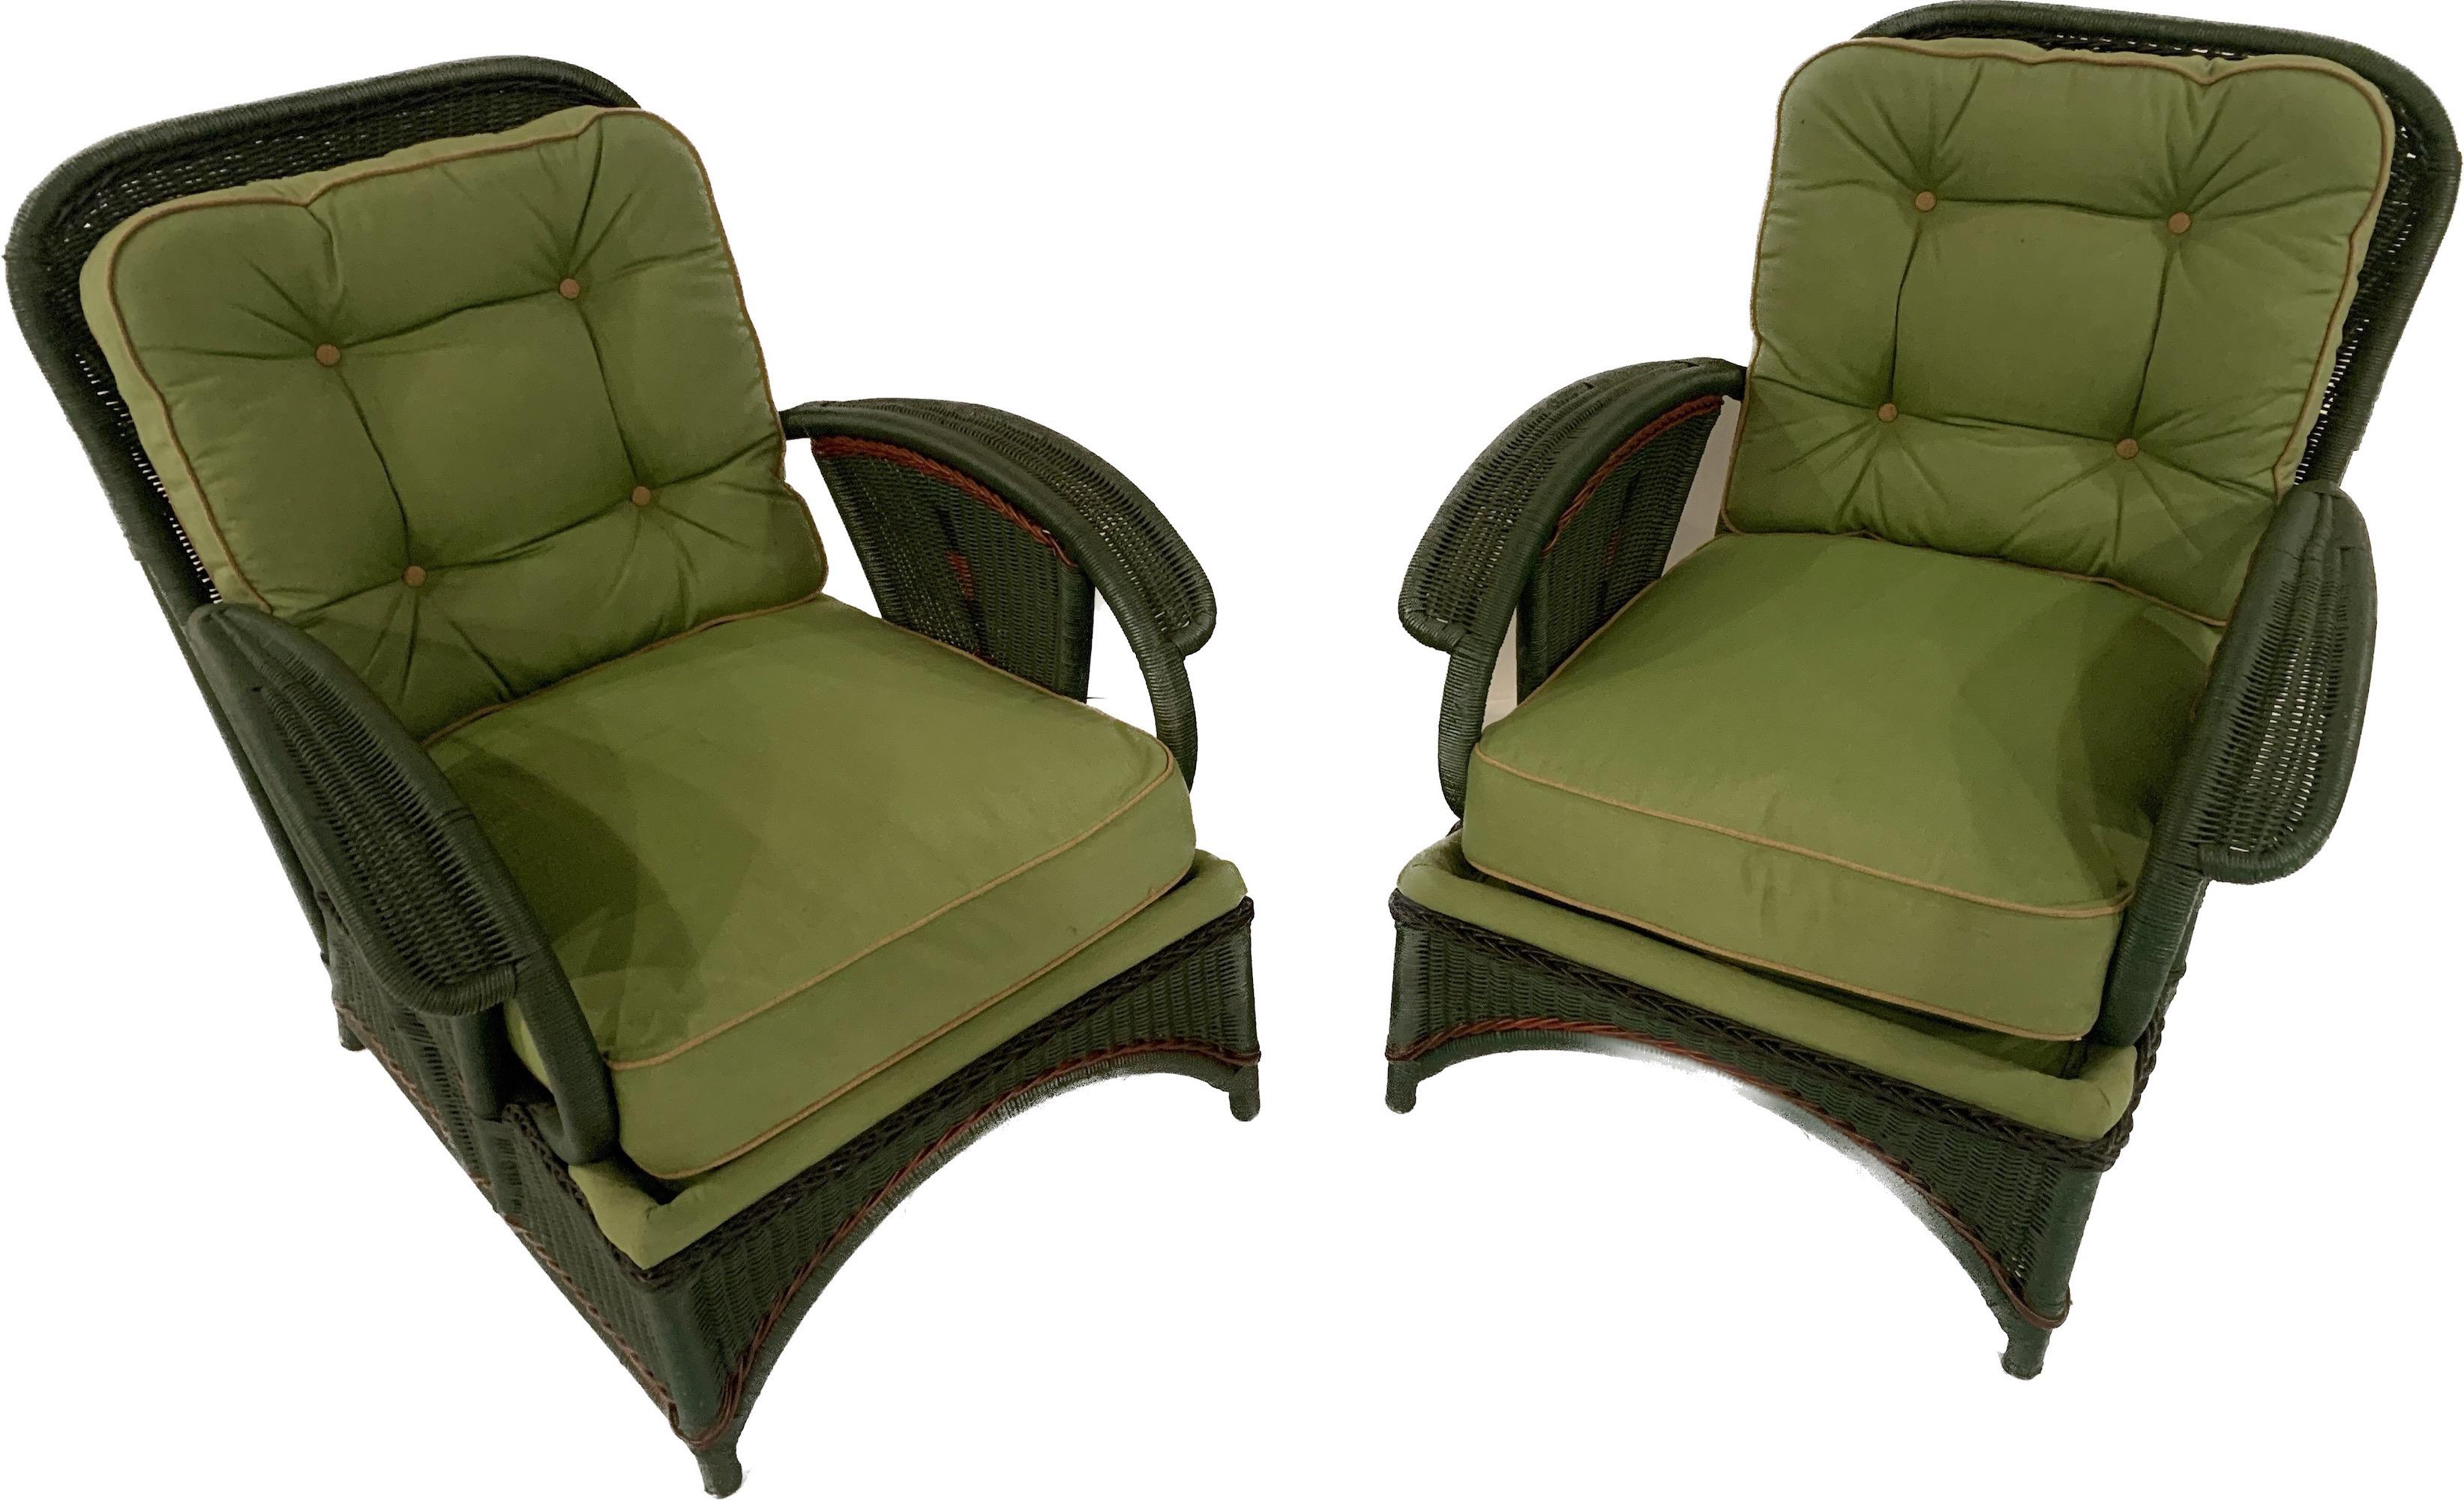 Paire de chaises longues en osier de style Arte Deco, américaines, C.C. 1920. Ces chaises étaient à la pointe de la mode dans les années 1920. Les meubles en roseau peints ont fait fureur pendant une courte période grâce à leurs formes